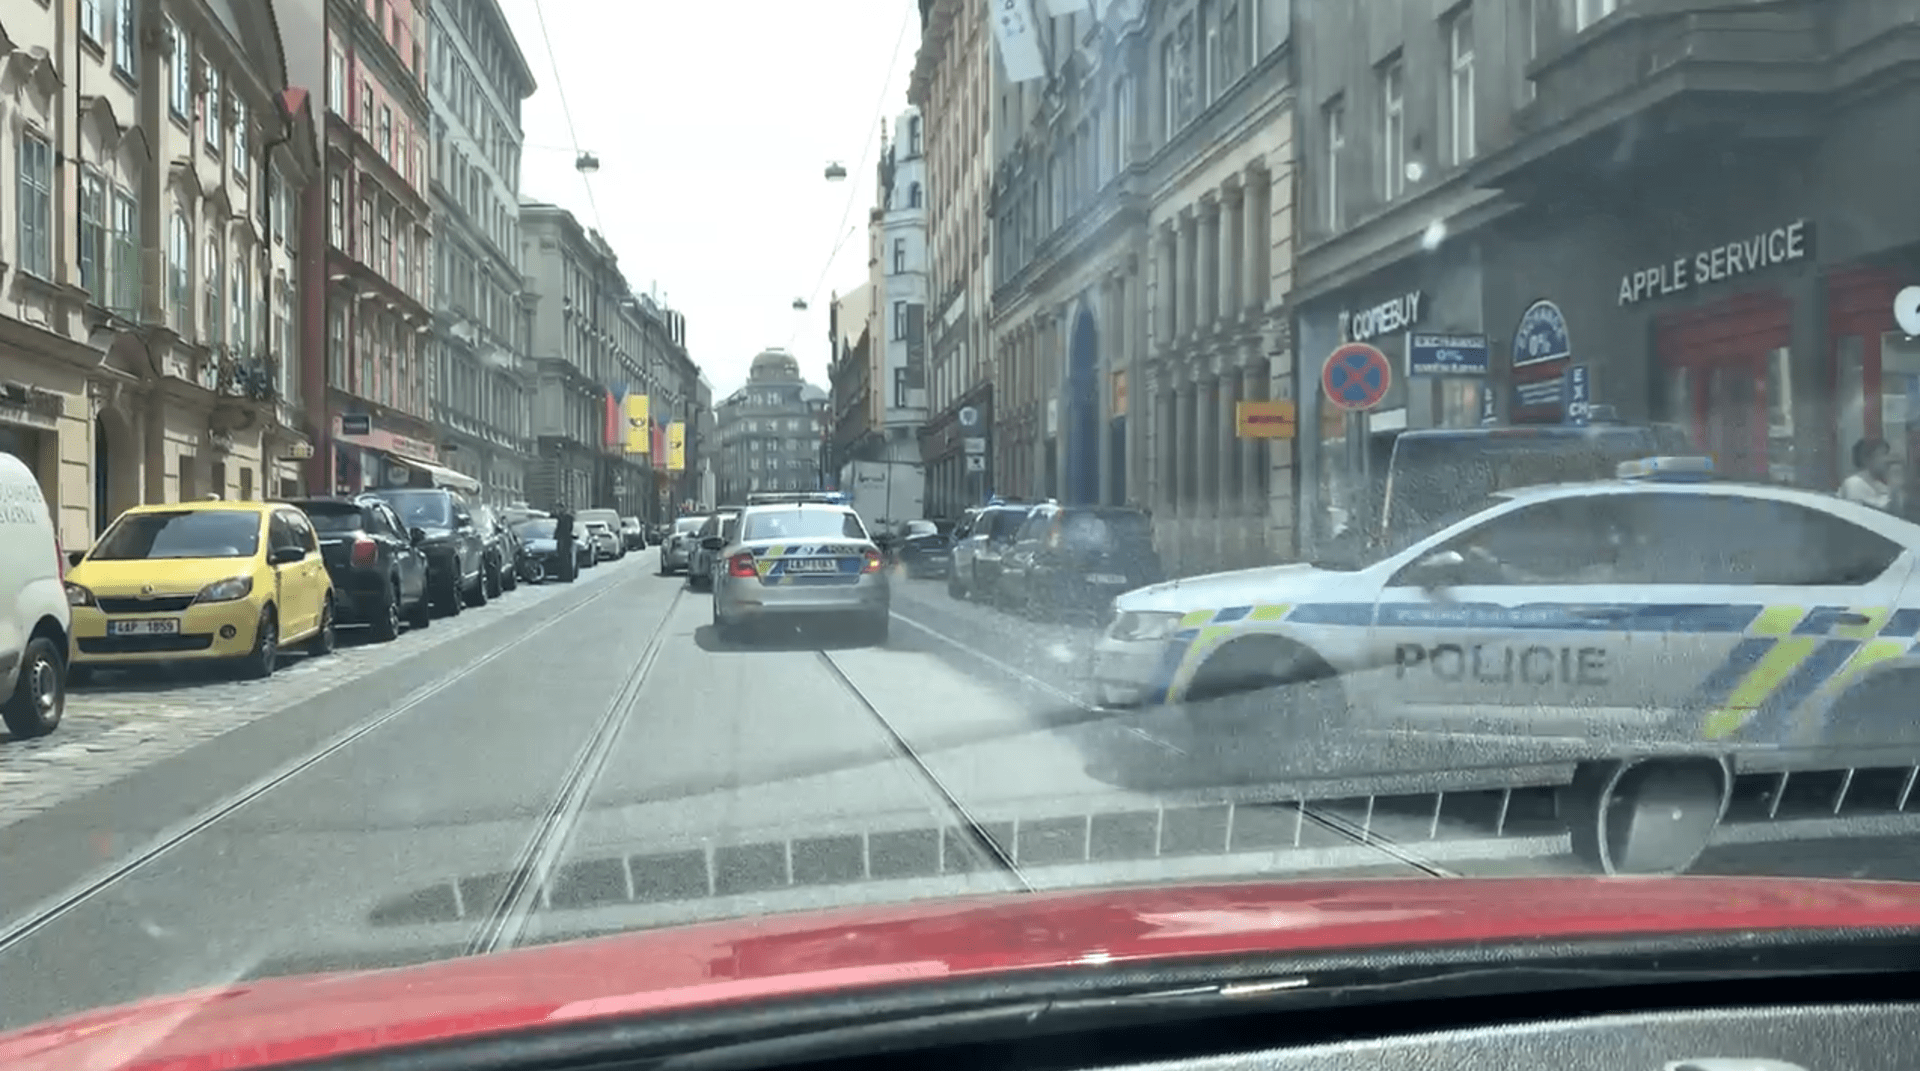 Policejní automobily v centru Prahy